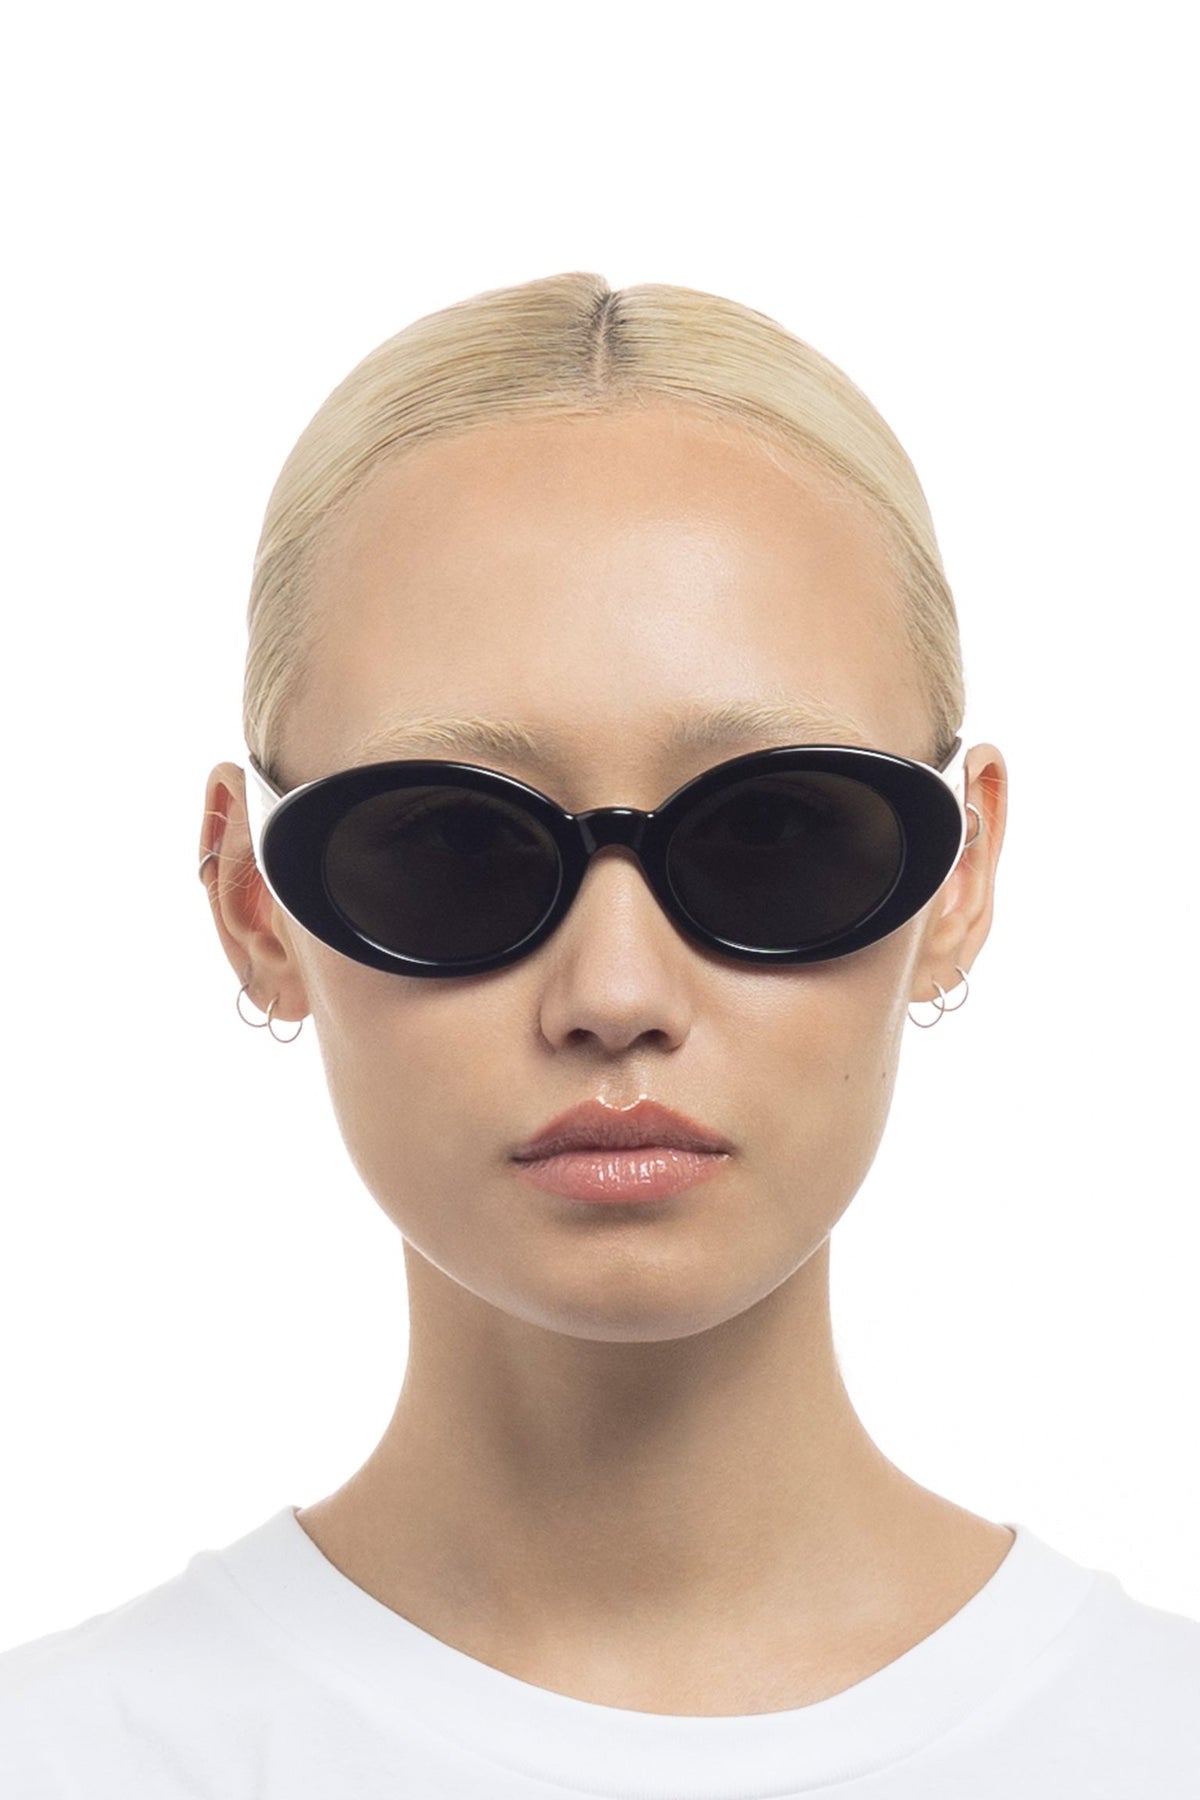 Nouveau Vie Sunglasses - Black